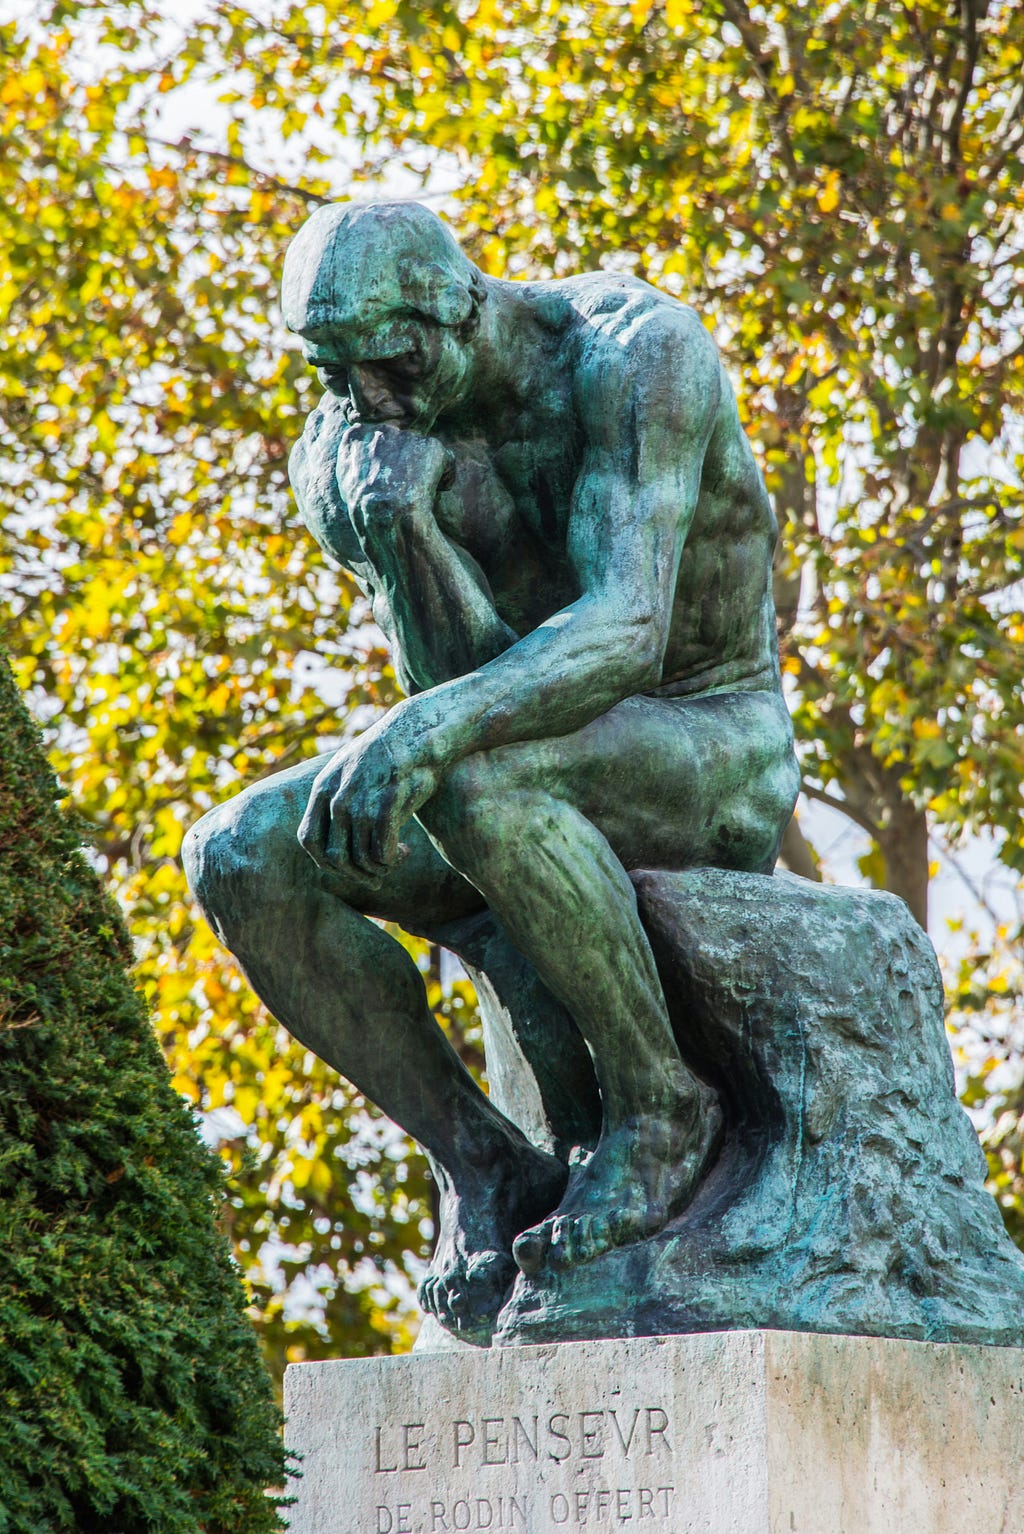 Rodin’s famous sculpture of “the Thinker” (Le Penseur) in a park in Paris.